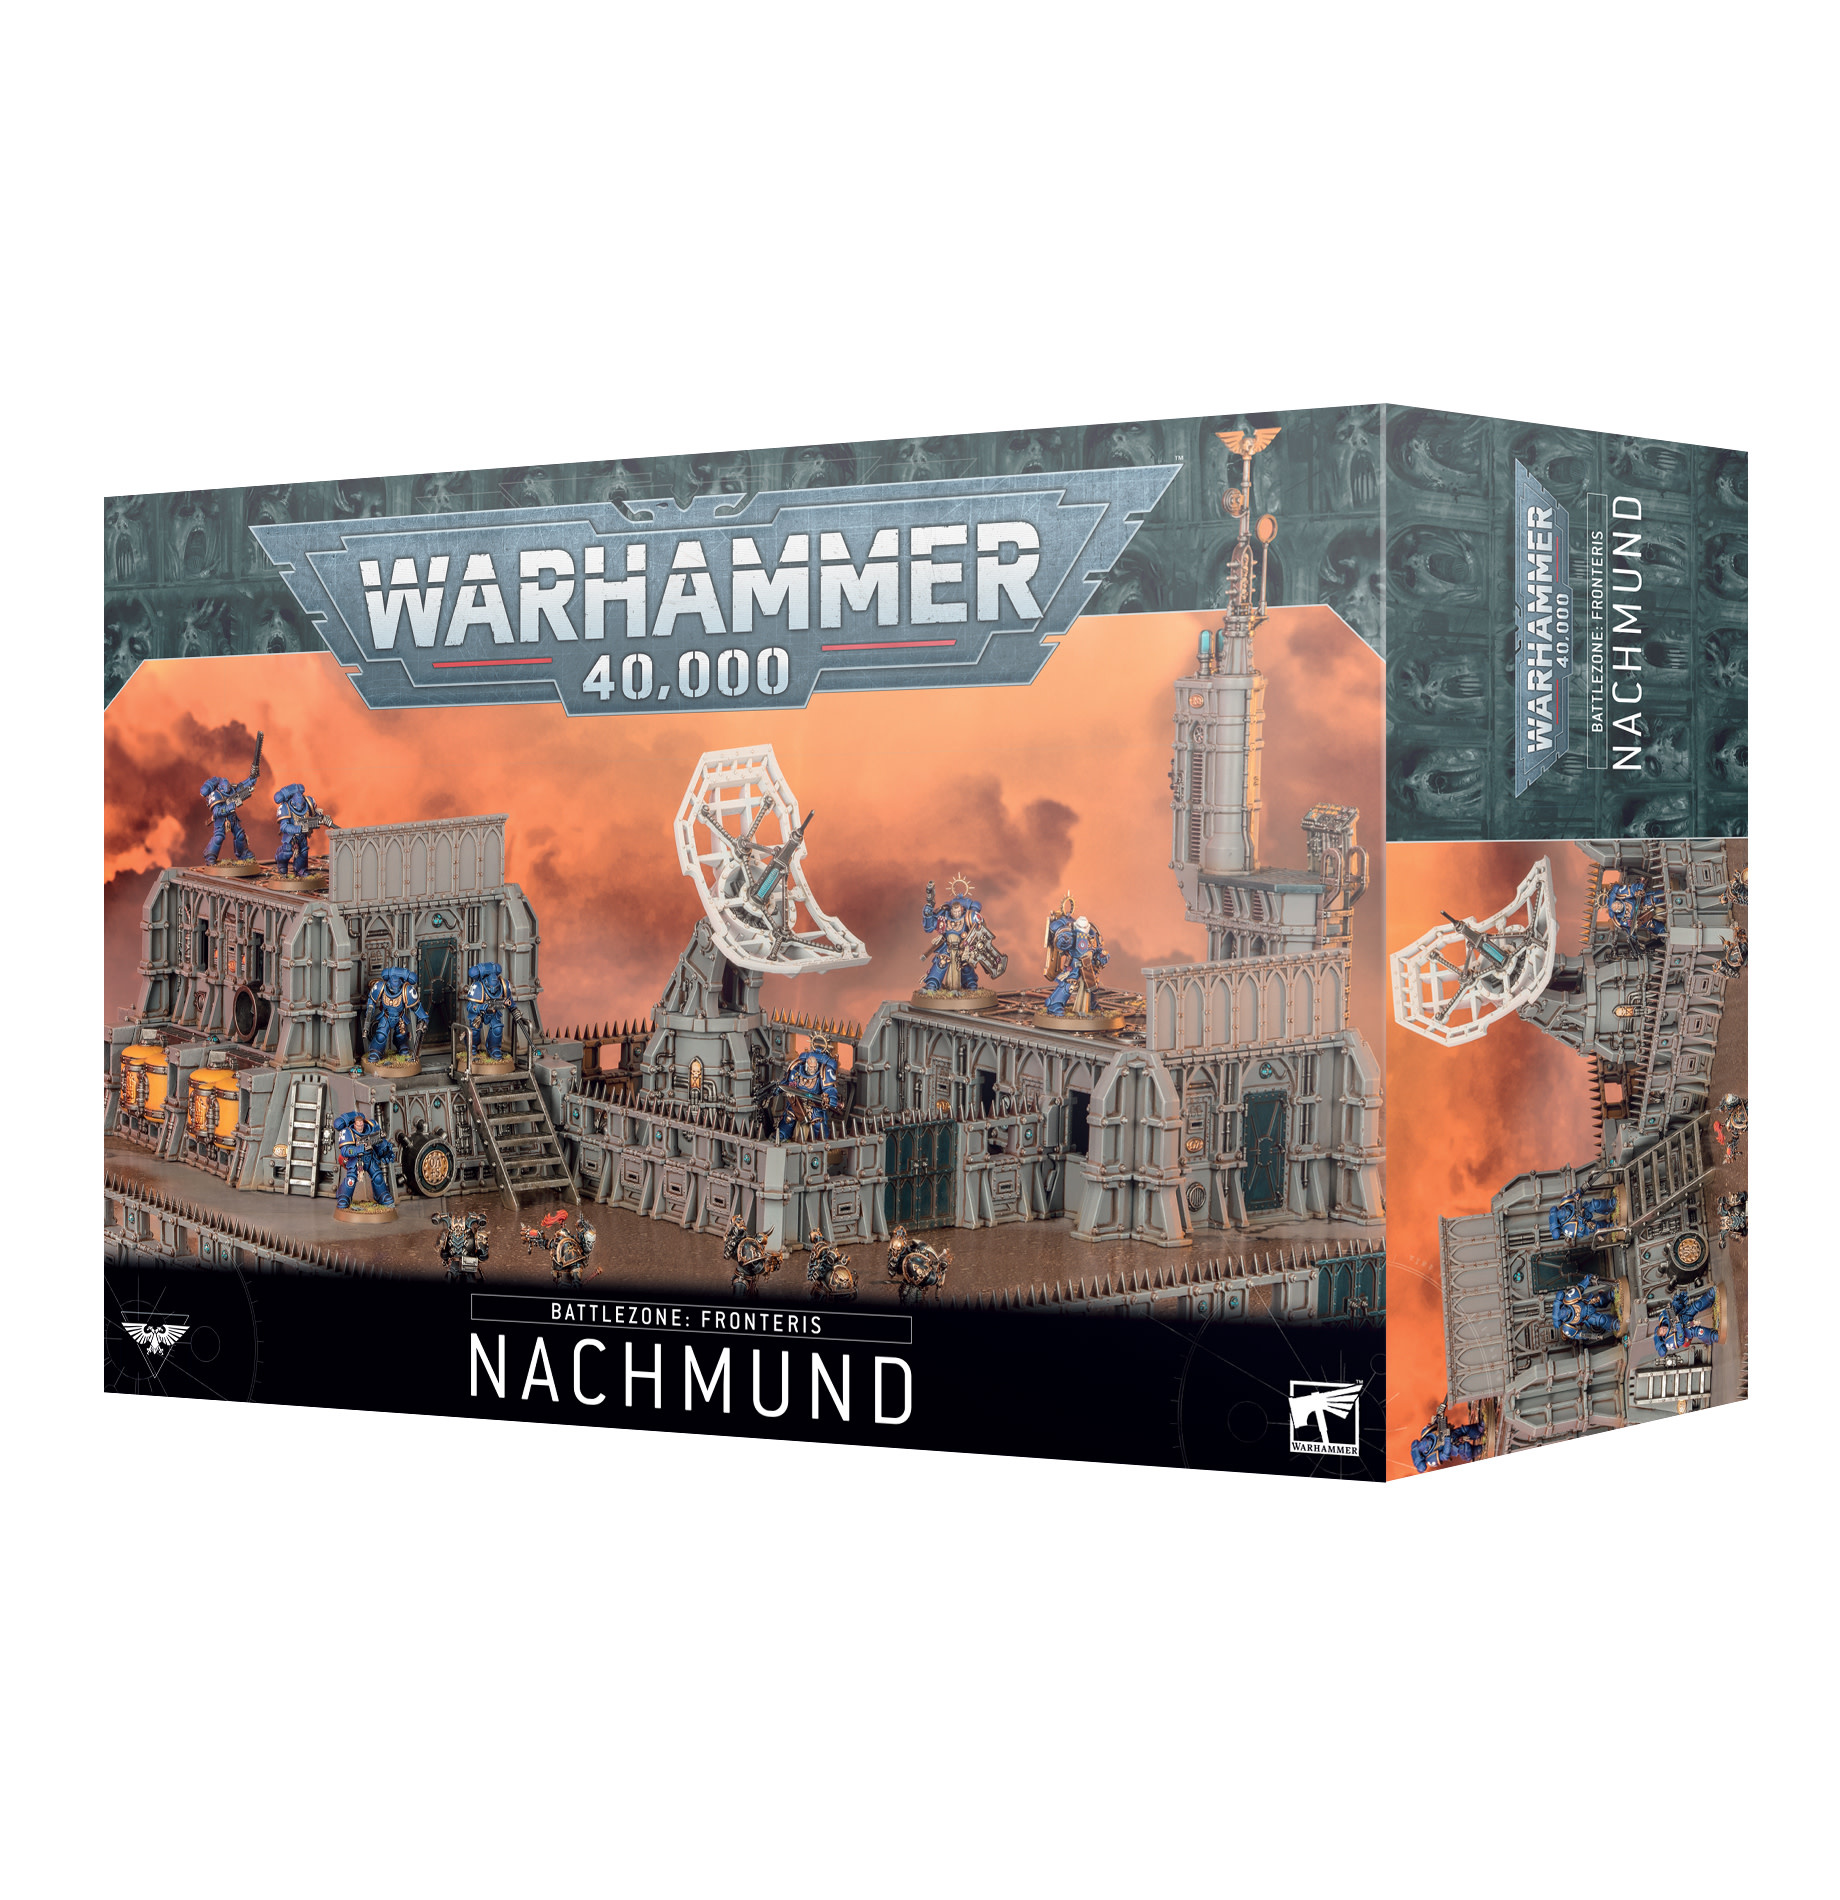 Warhammer 40,000: Battlezone: Fronteris Nachmund